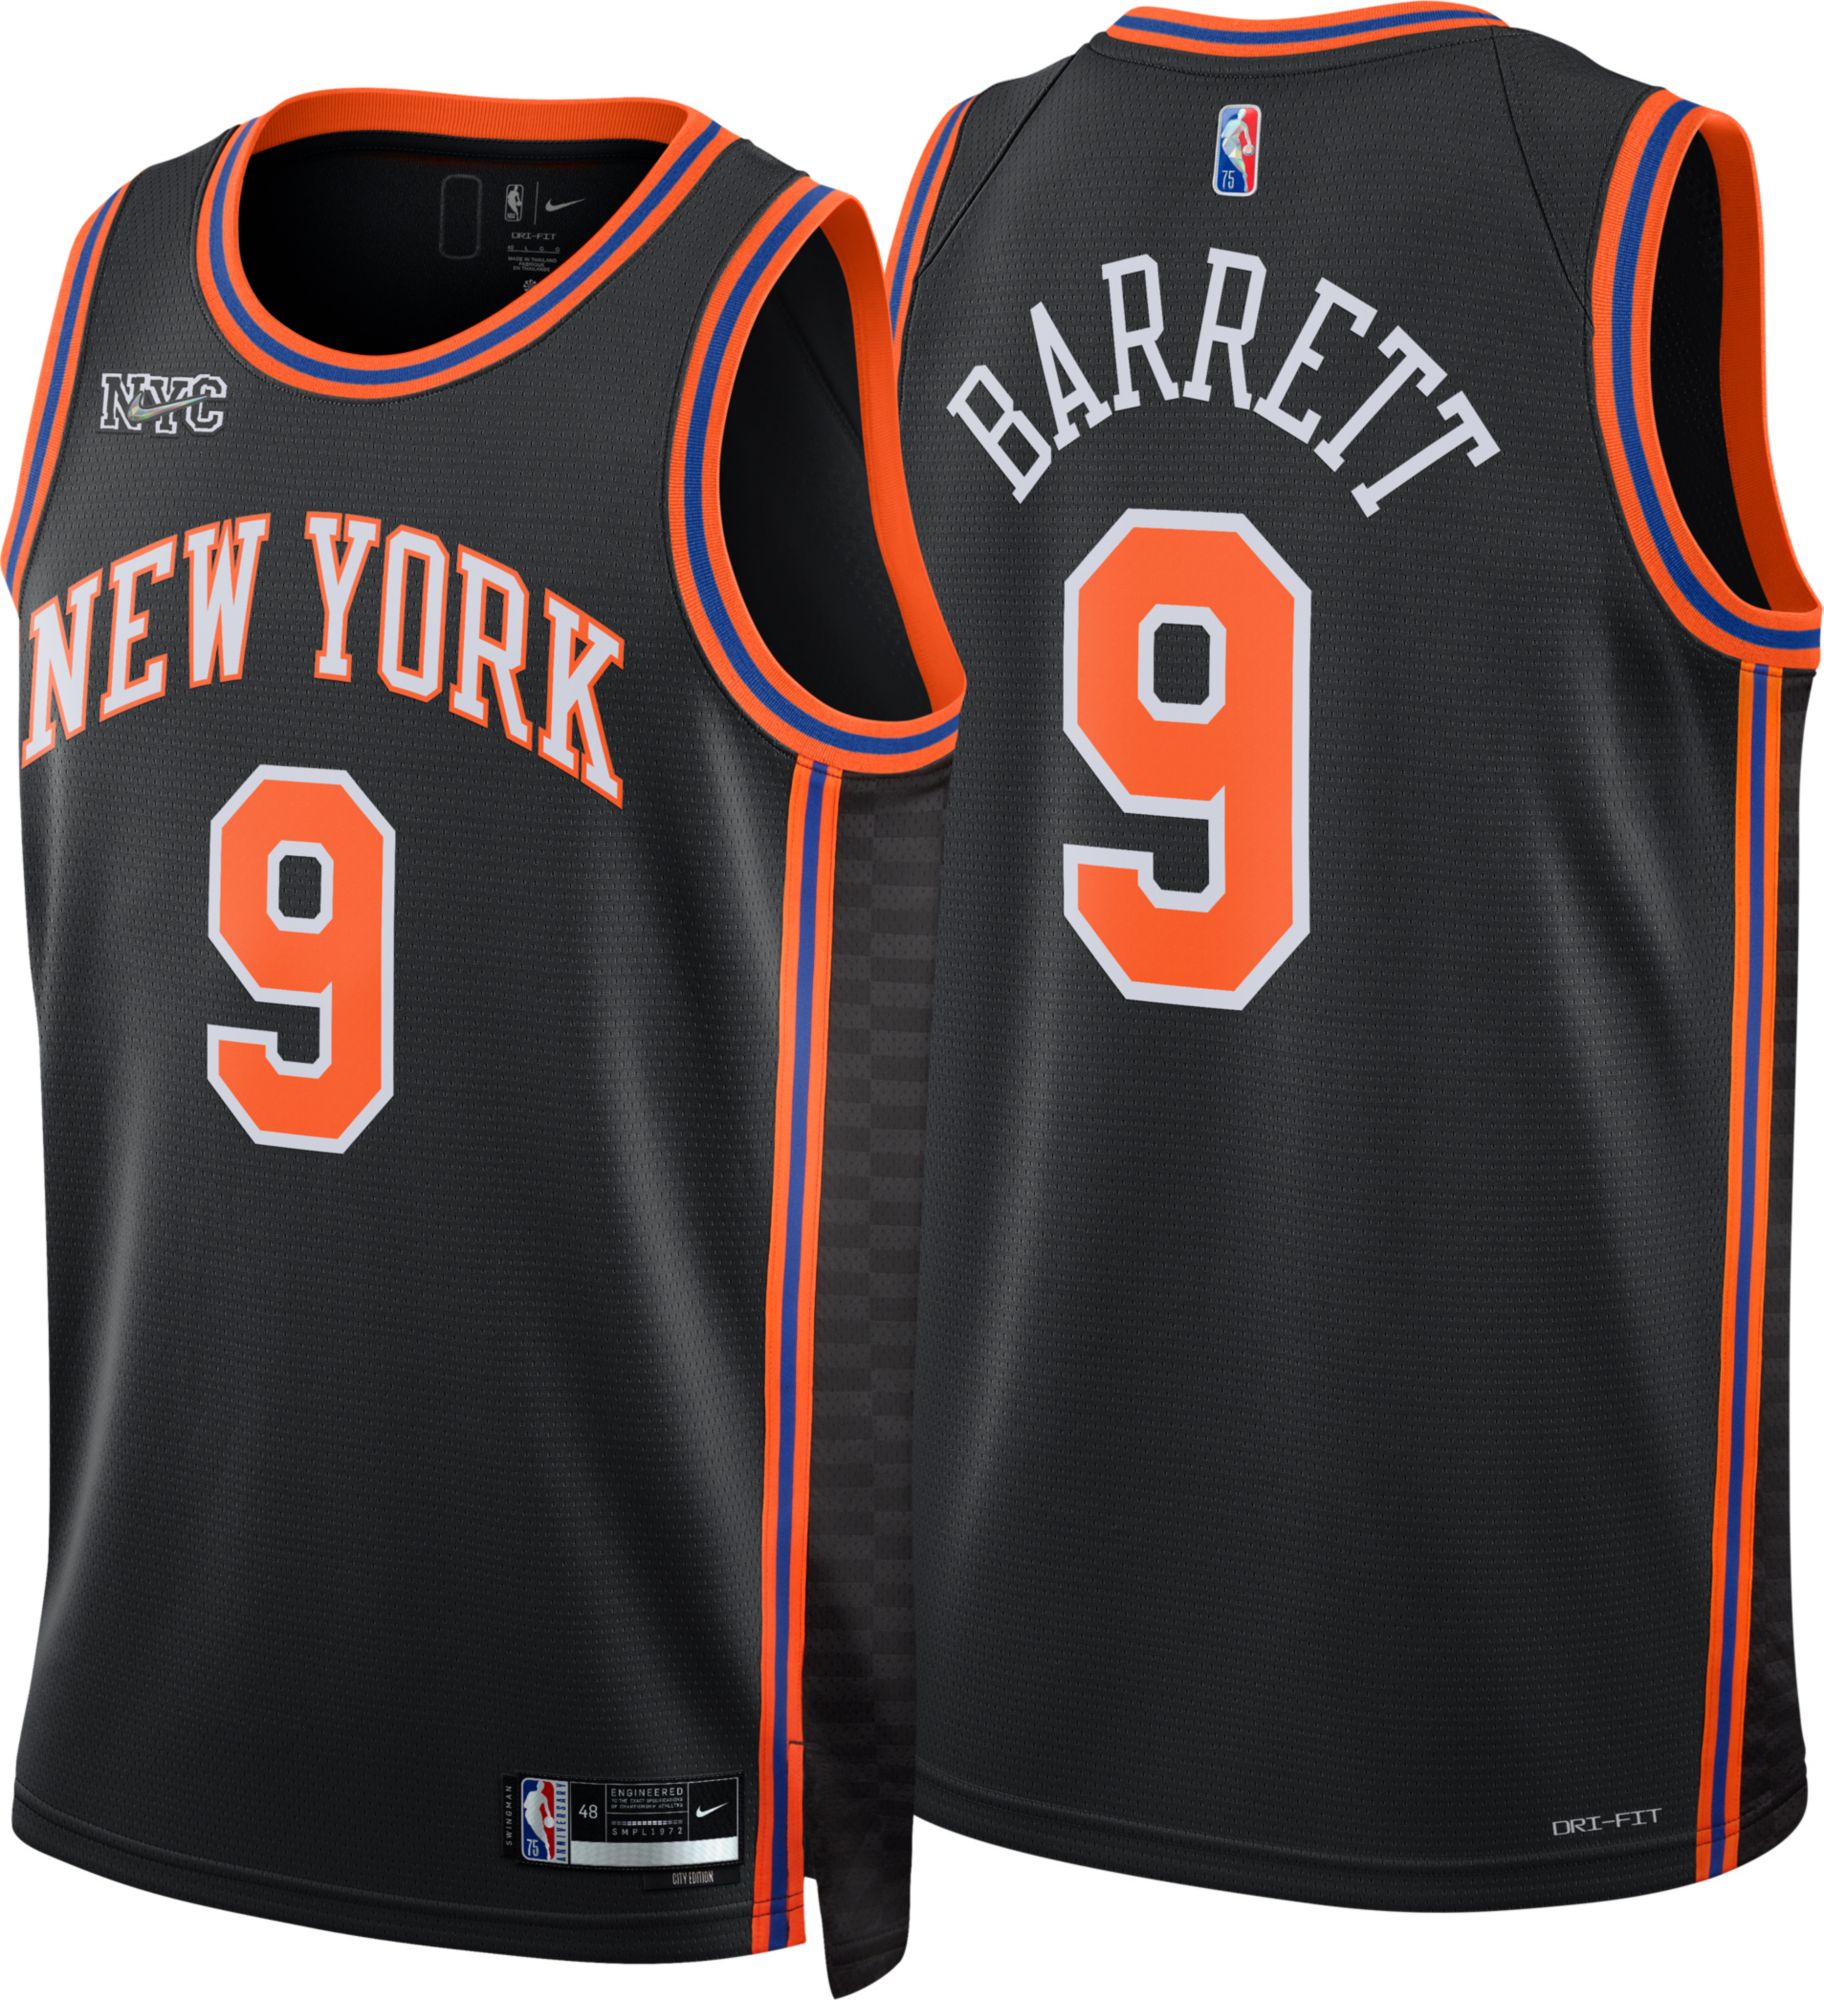 Knicks City Jersey (21-22 City Edition) Black & Orange Knicks